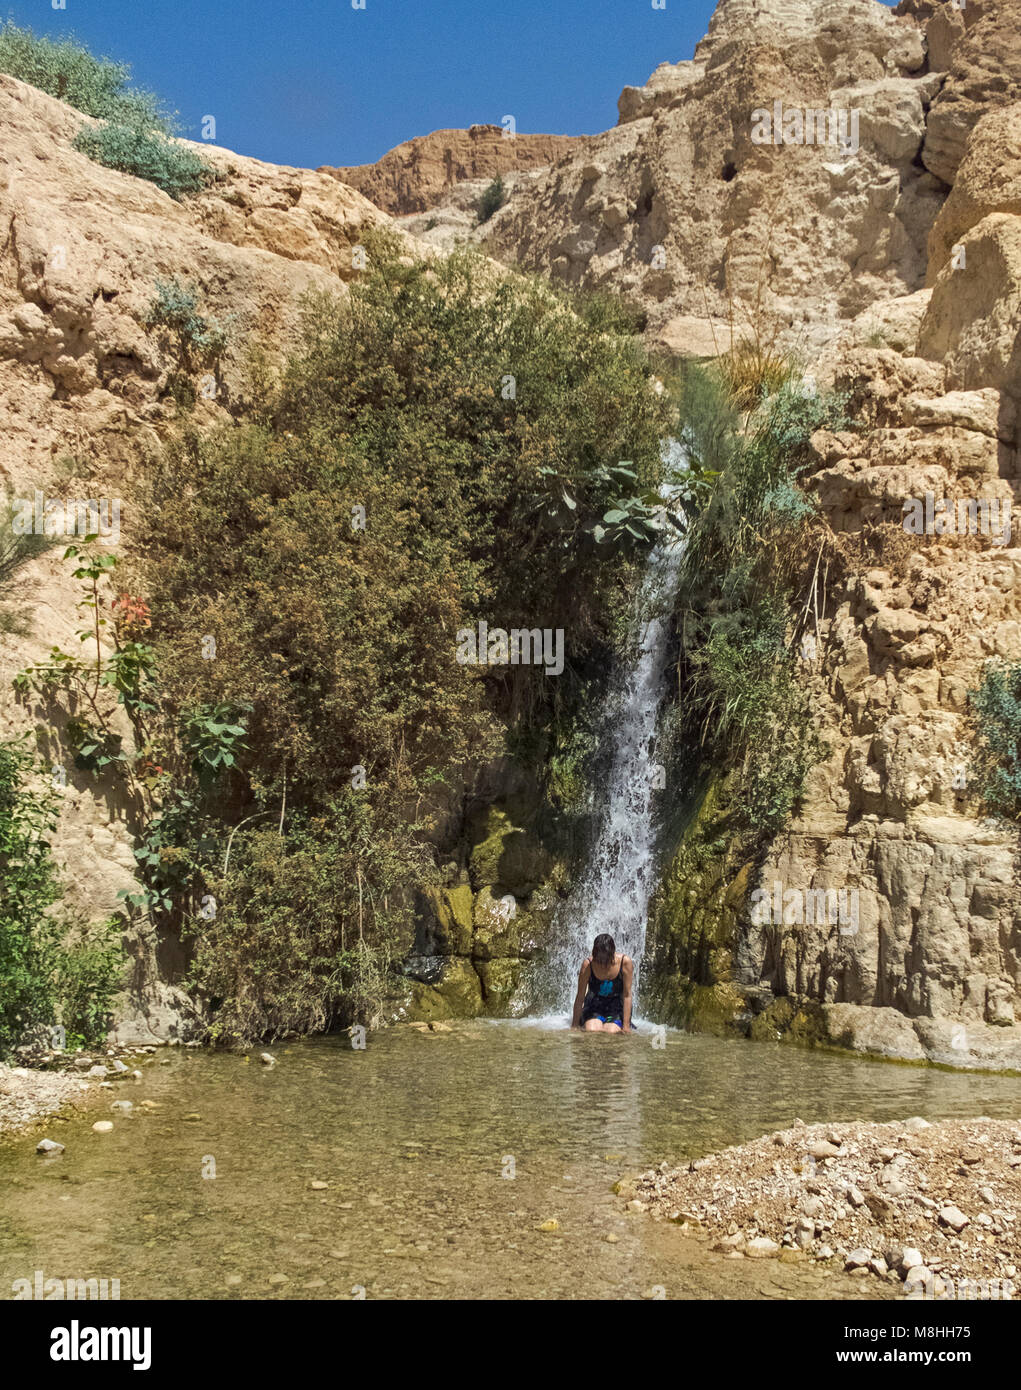 bather enjoying a natural massage in wadi David waterfall at Ein Gedi Stock Photo